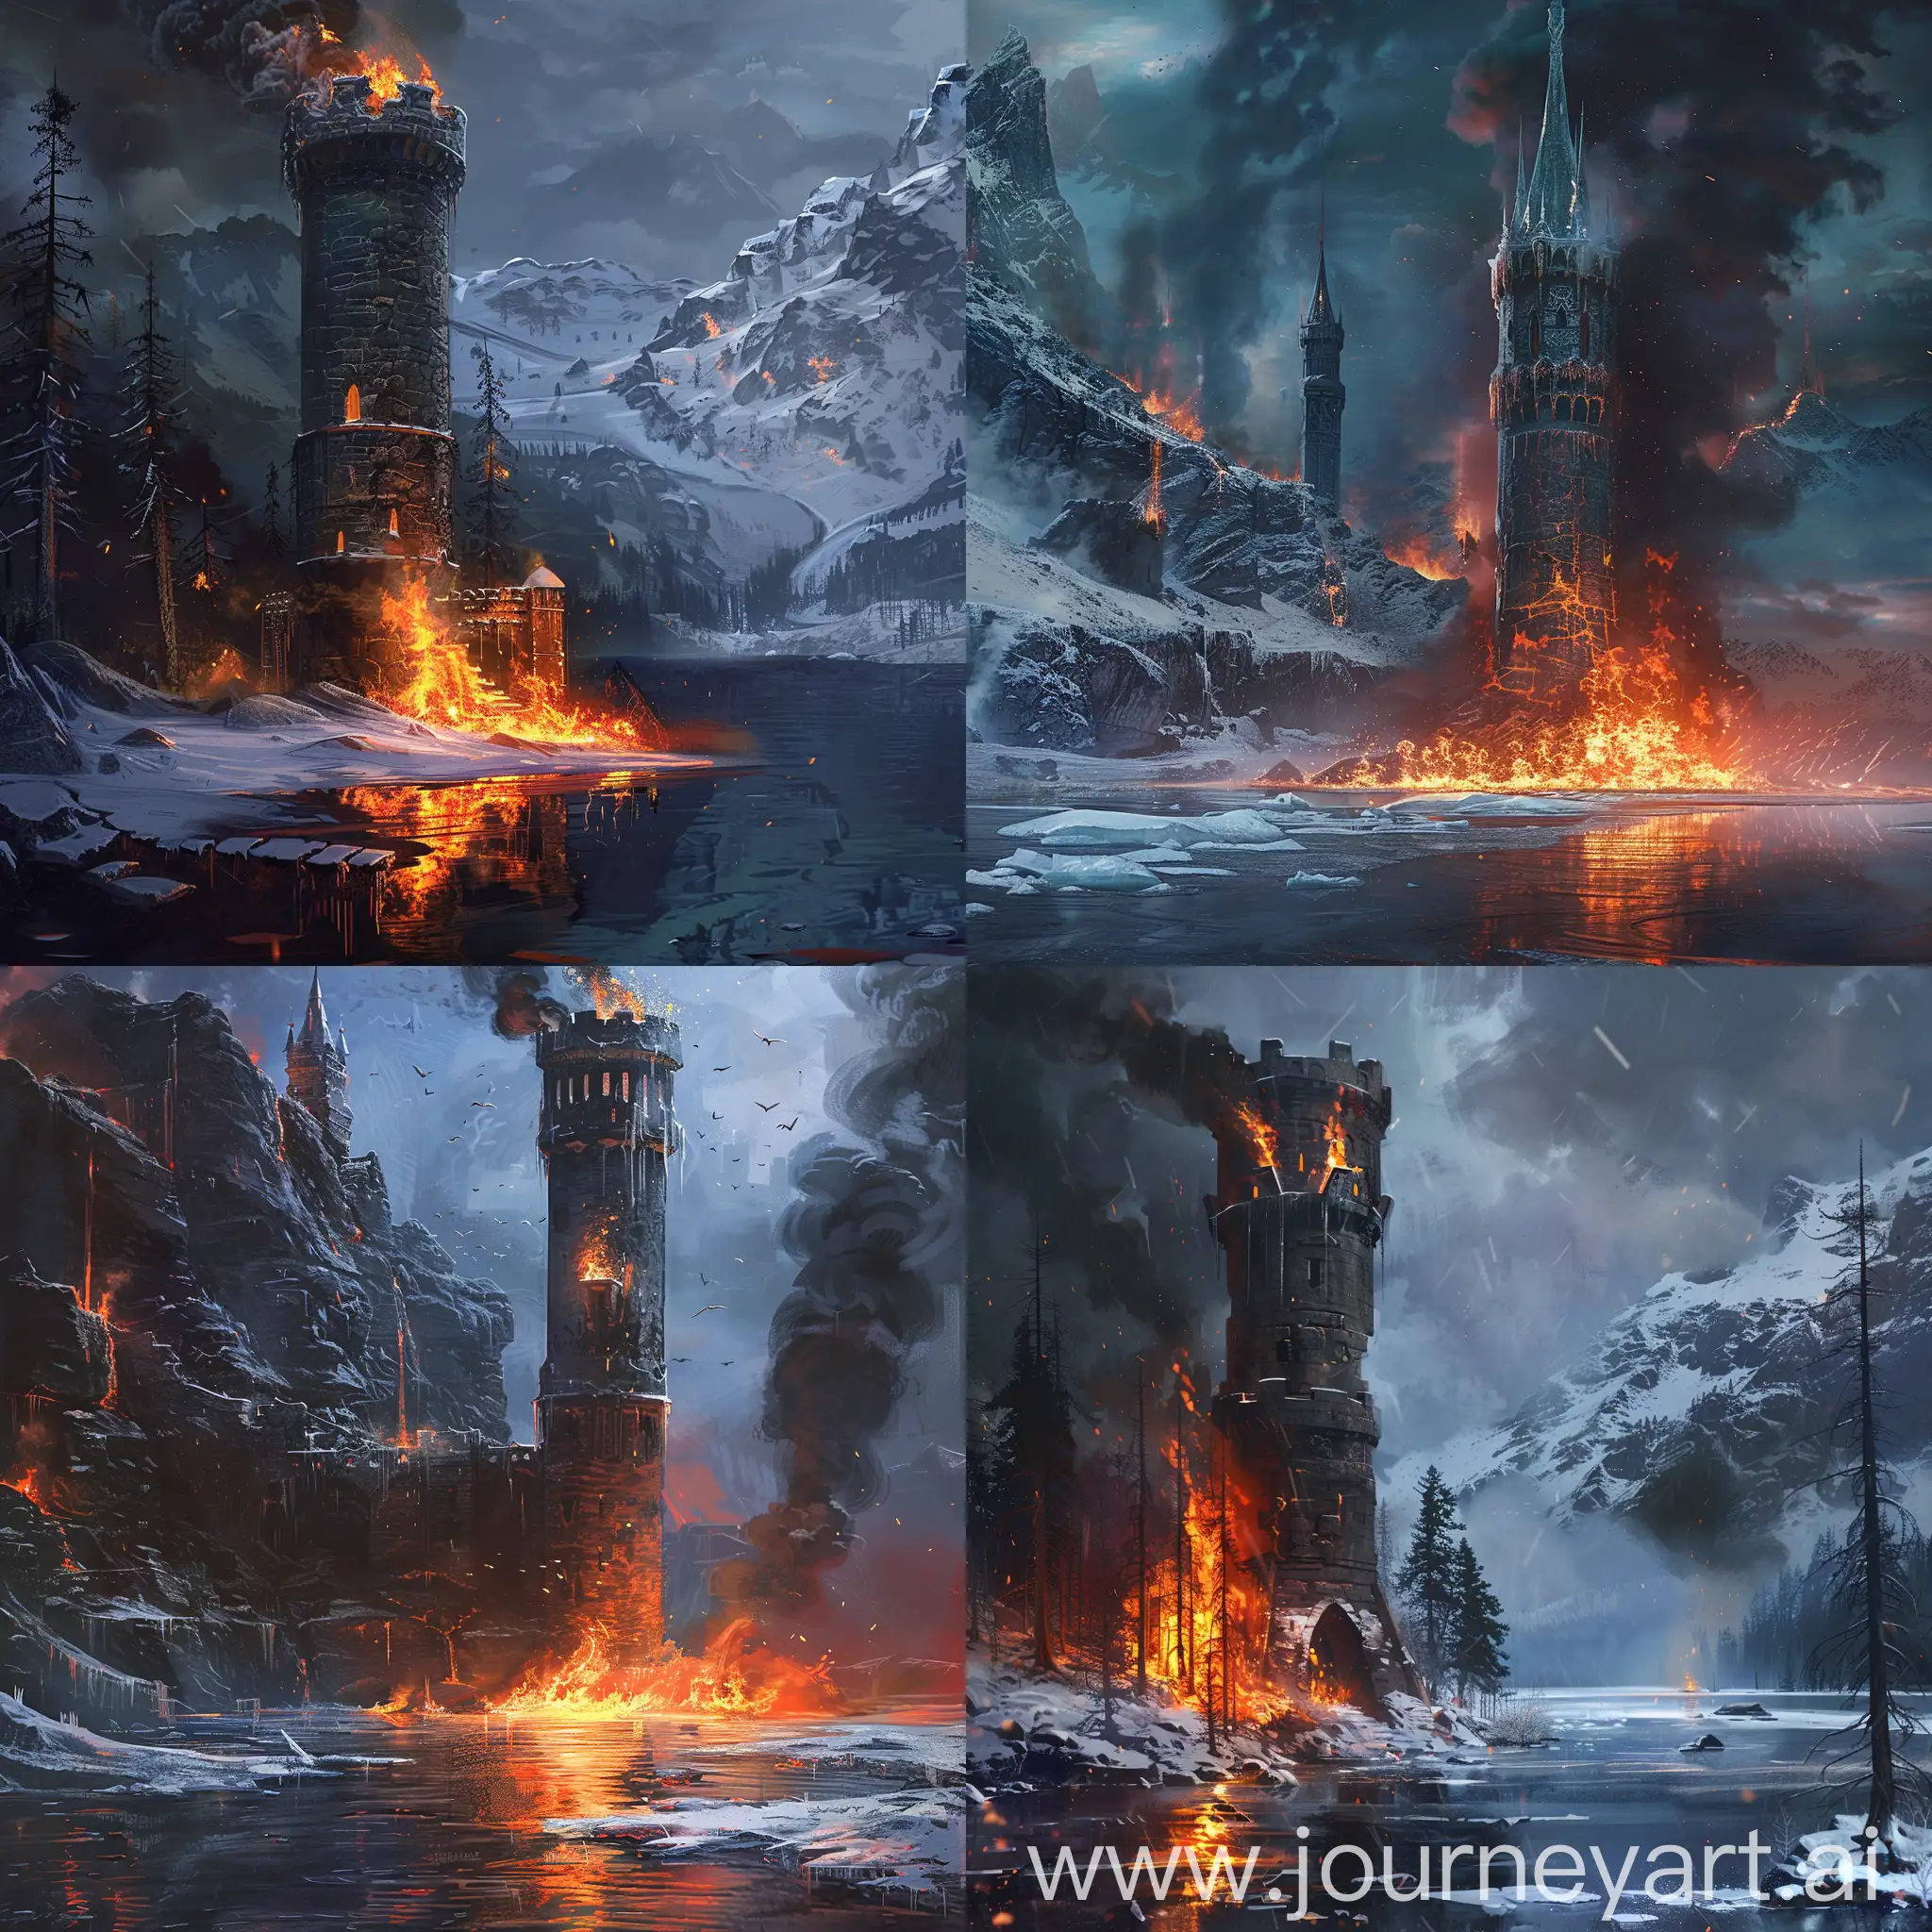 озеро горит огнём, рядом стоит эльфовая башня которая замёрзла